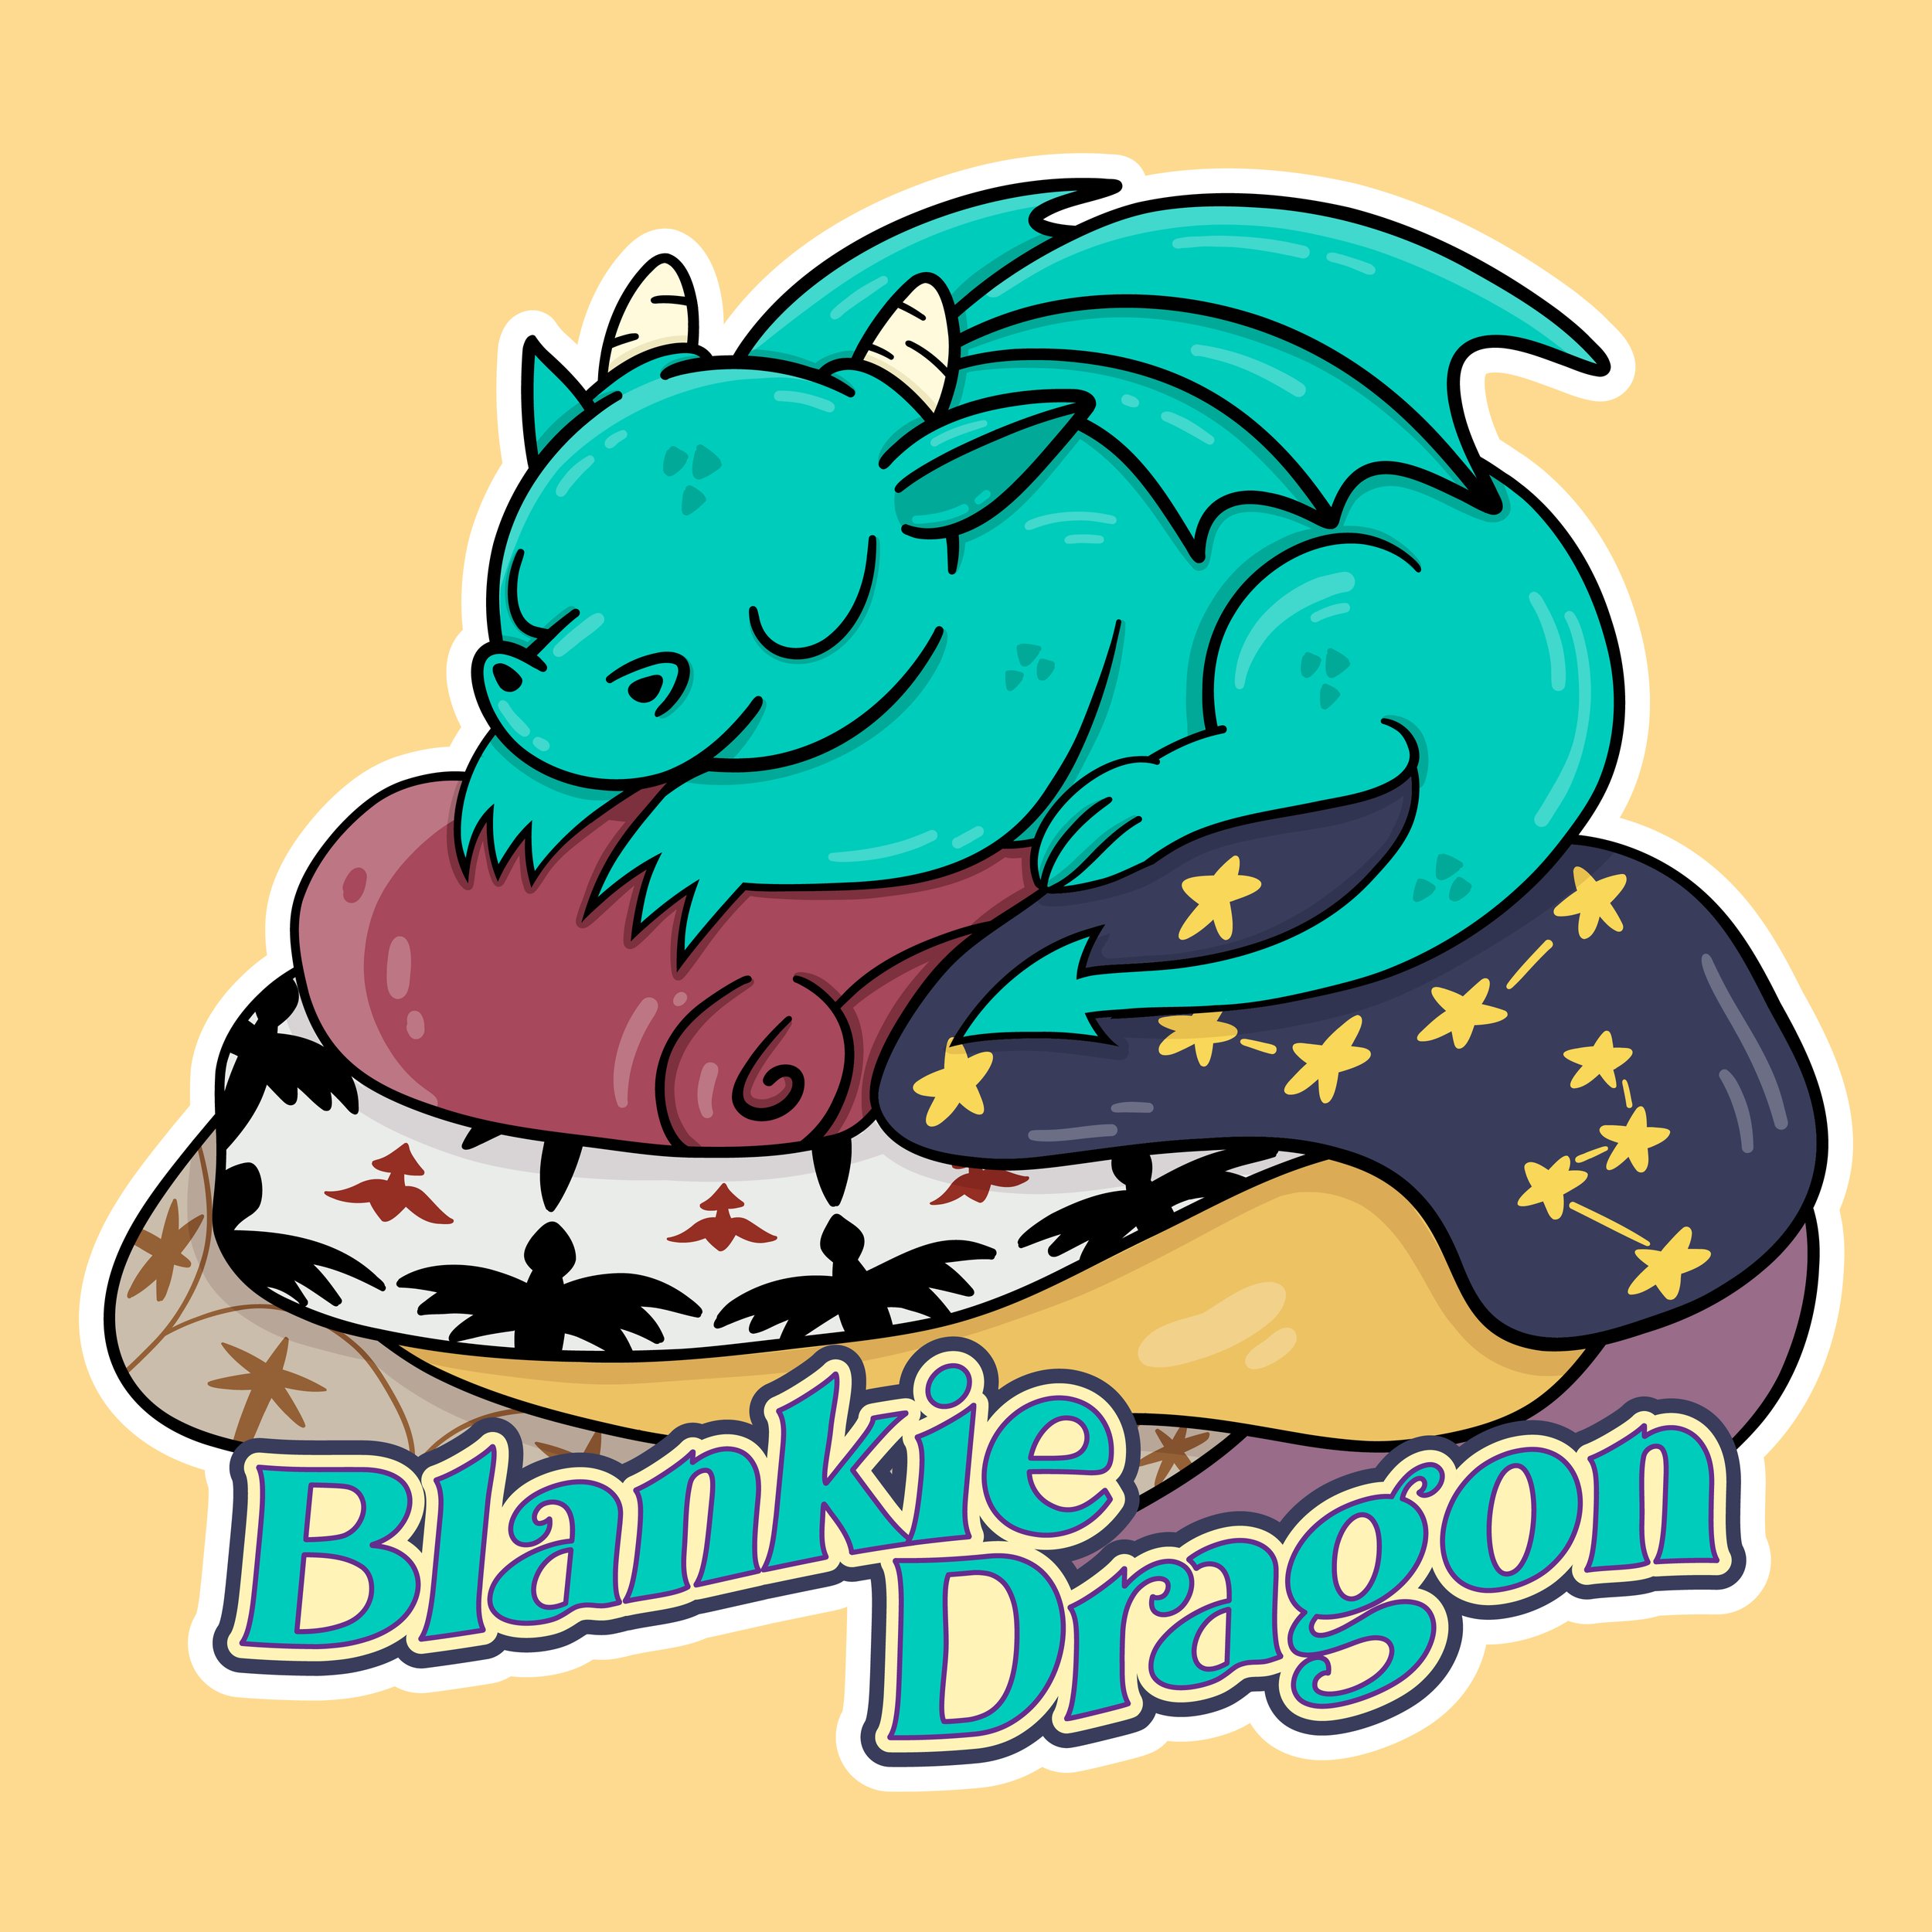 Blankie Dragon (RGB) (1).jpg